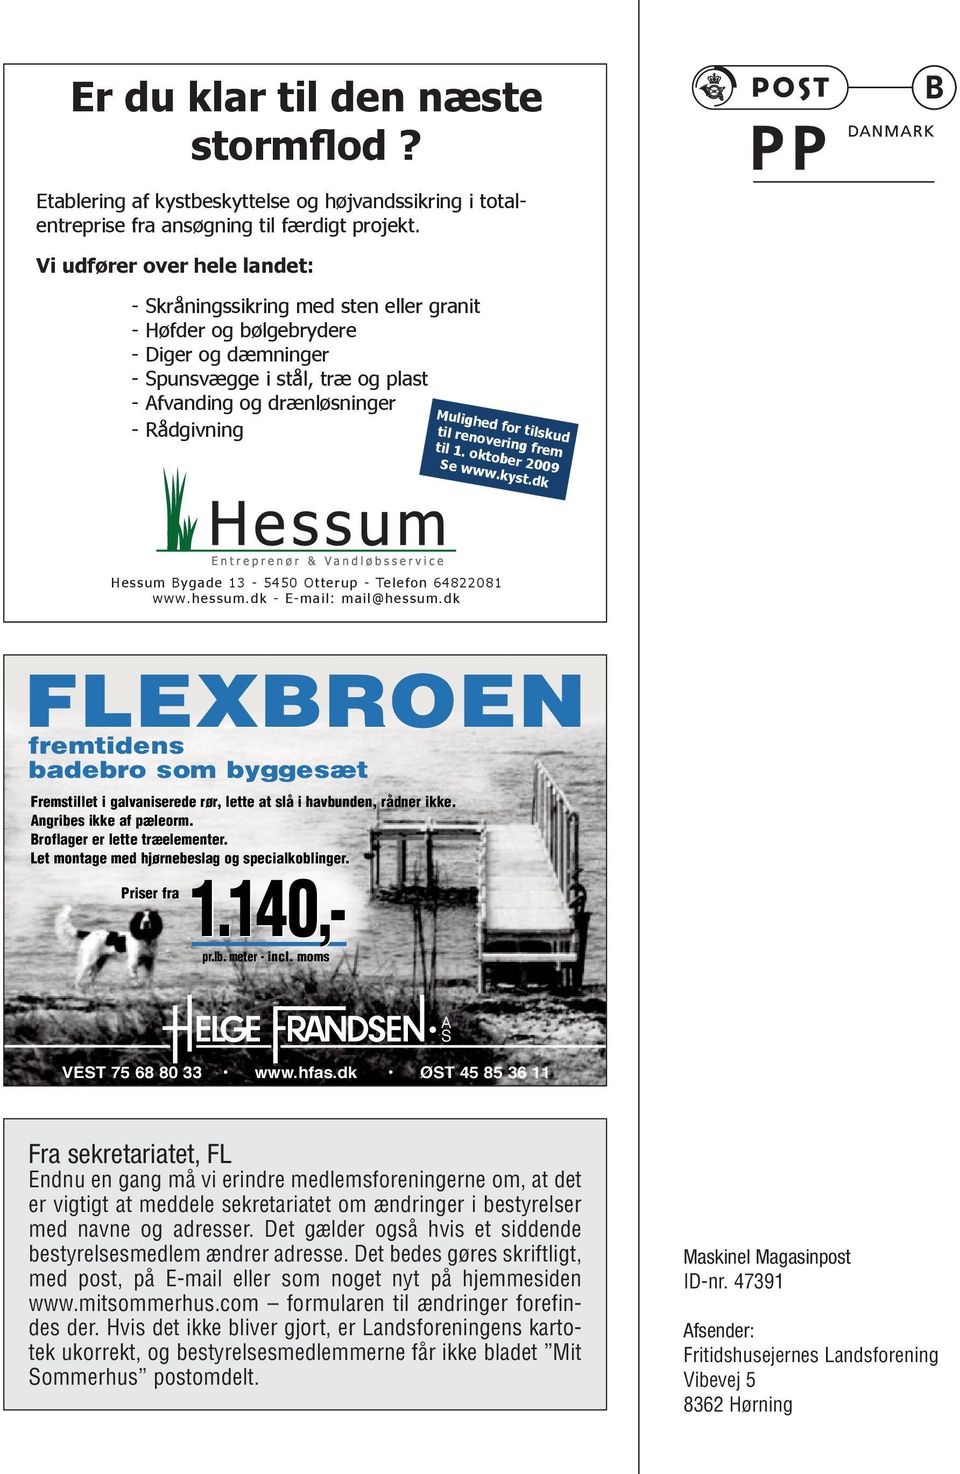 Mulighed for tilskud til renovering frem til 1. oktober 2009 Se www.kyst.dk Hessum Bygade 13-5450 Otterup - Telefon 64822081 www.hessum.dk - E-mail: mail@hessum.